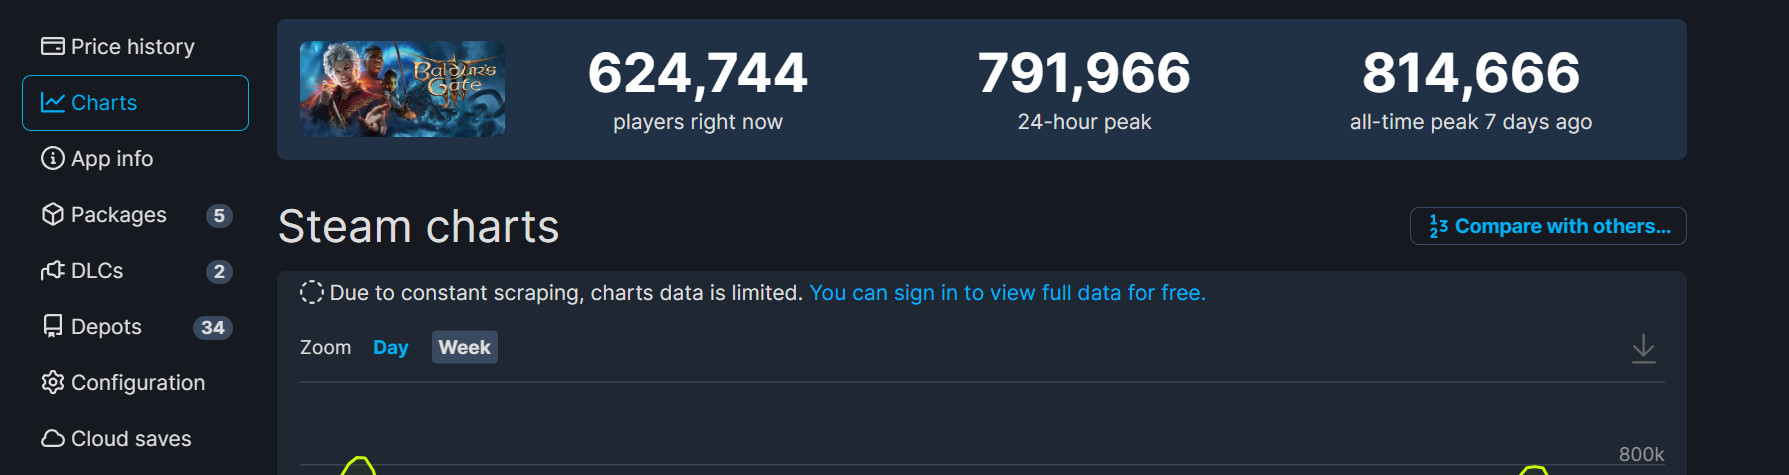 《柏德之門3》粉絲組織登錄遊戲 希望能突破100萬大關